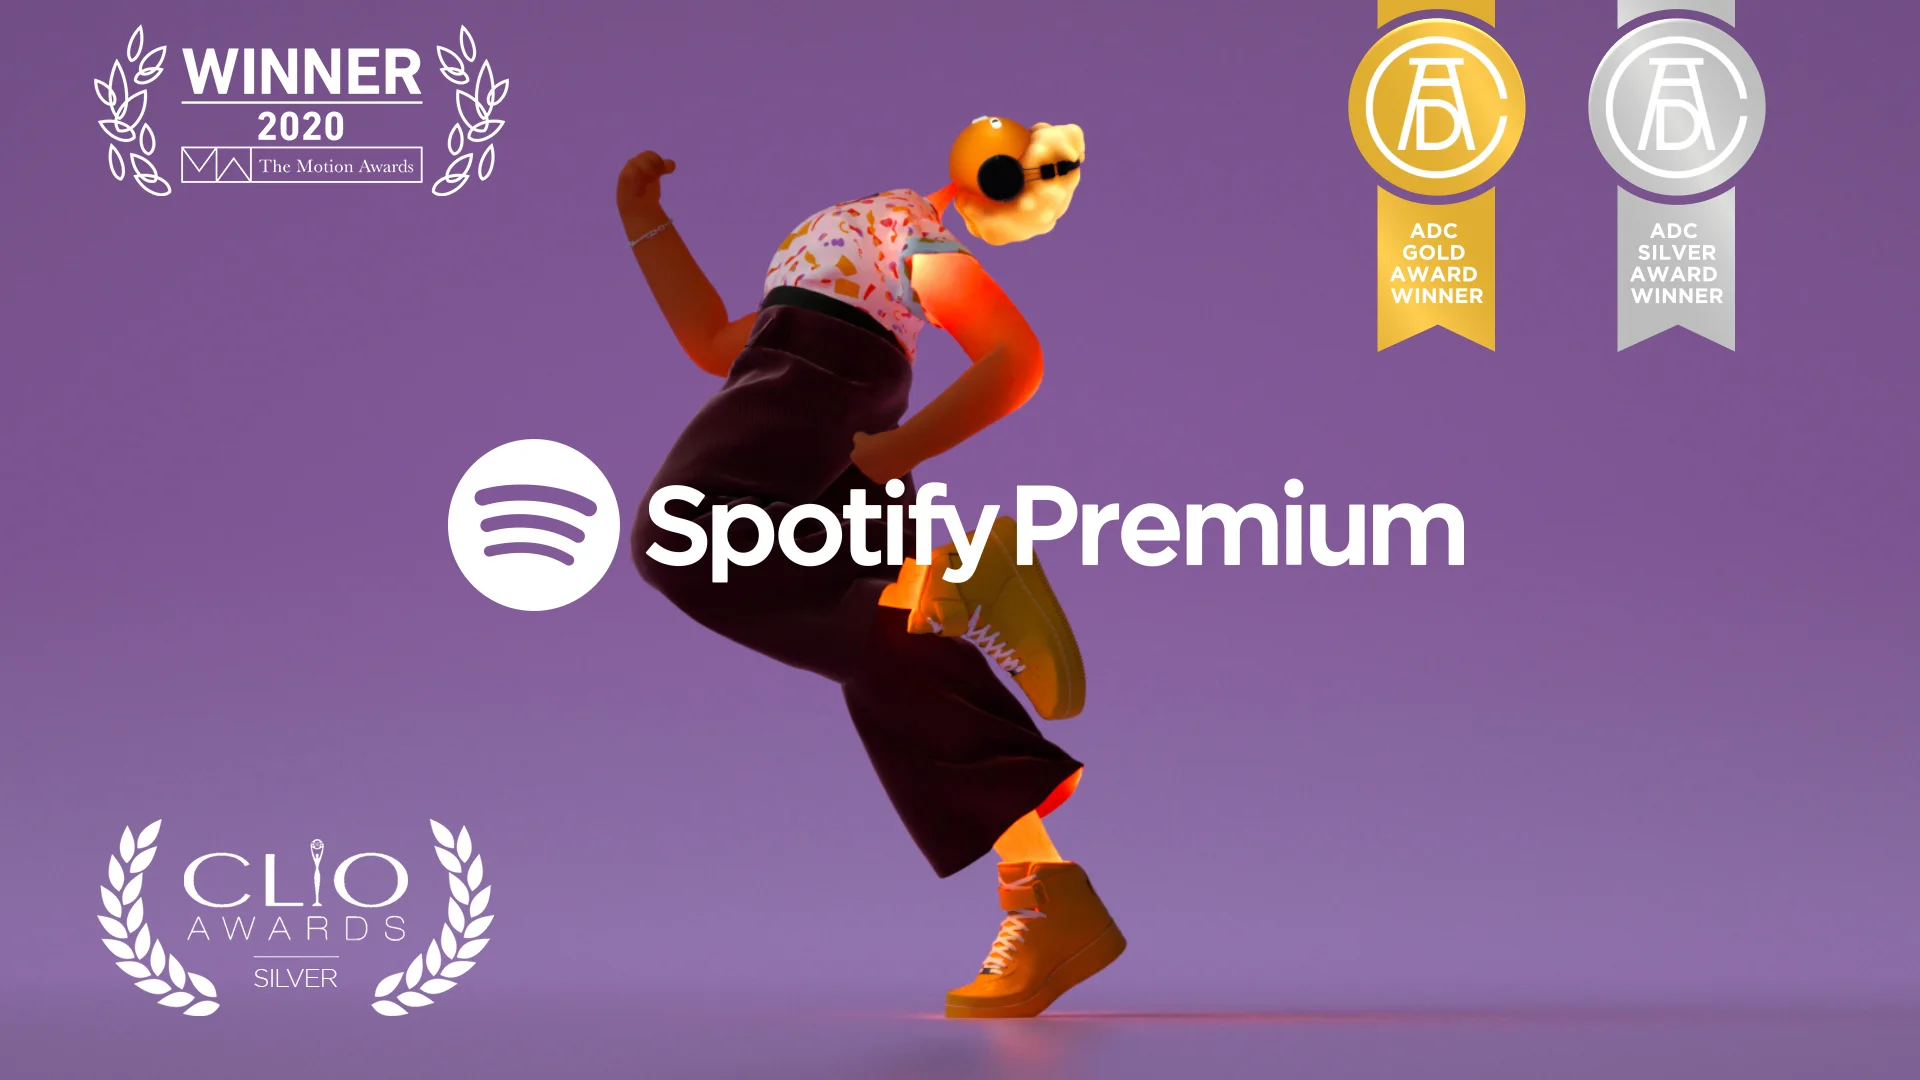 Cabeza Patata x Spotify Premium Reel on Vimeo